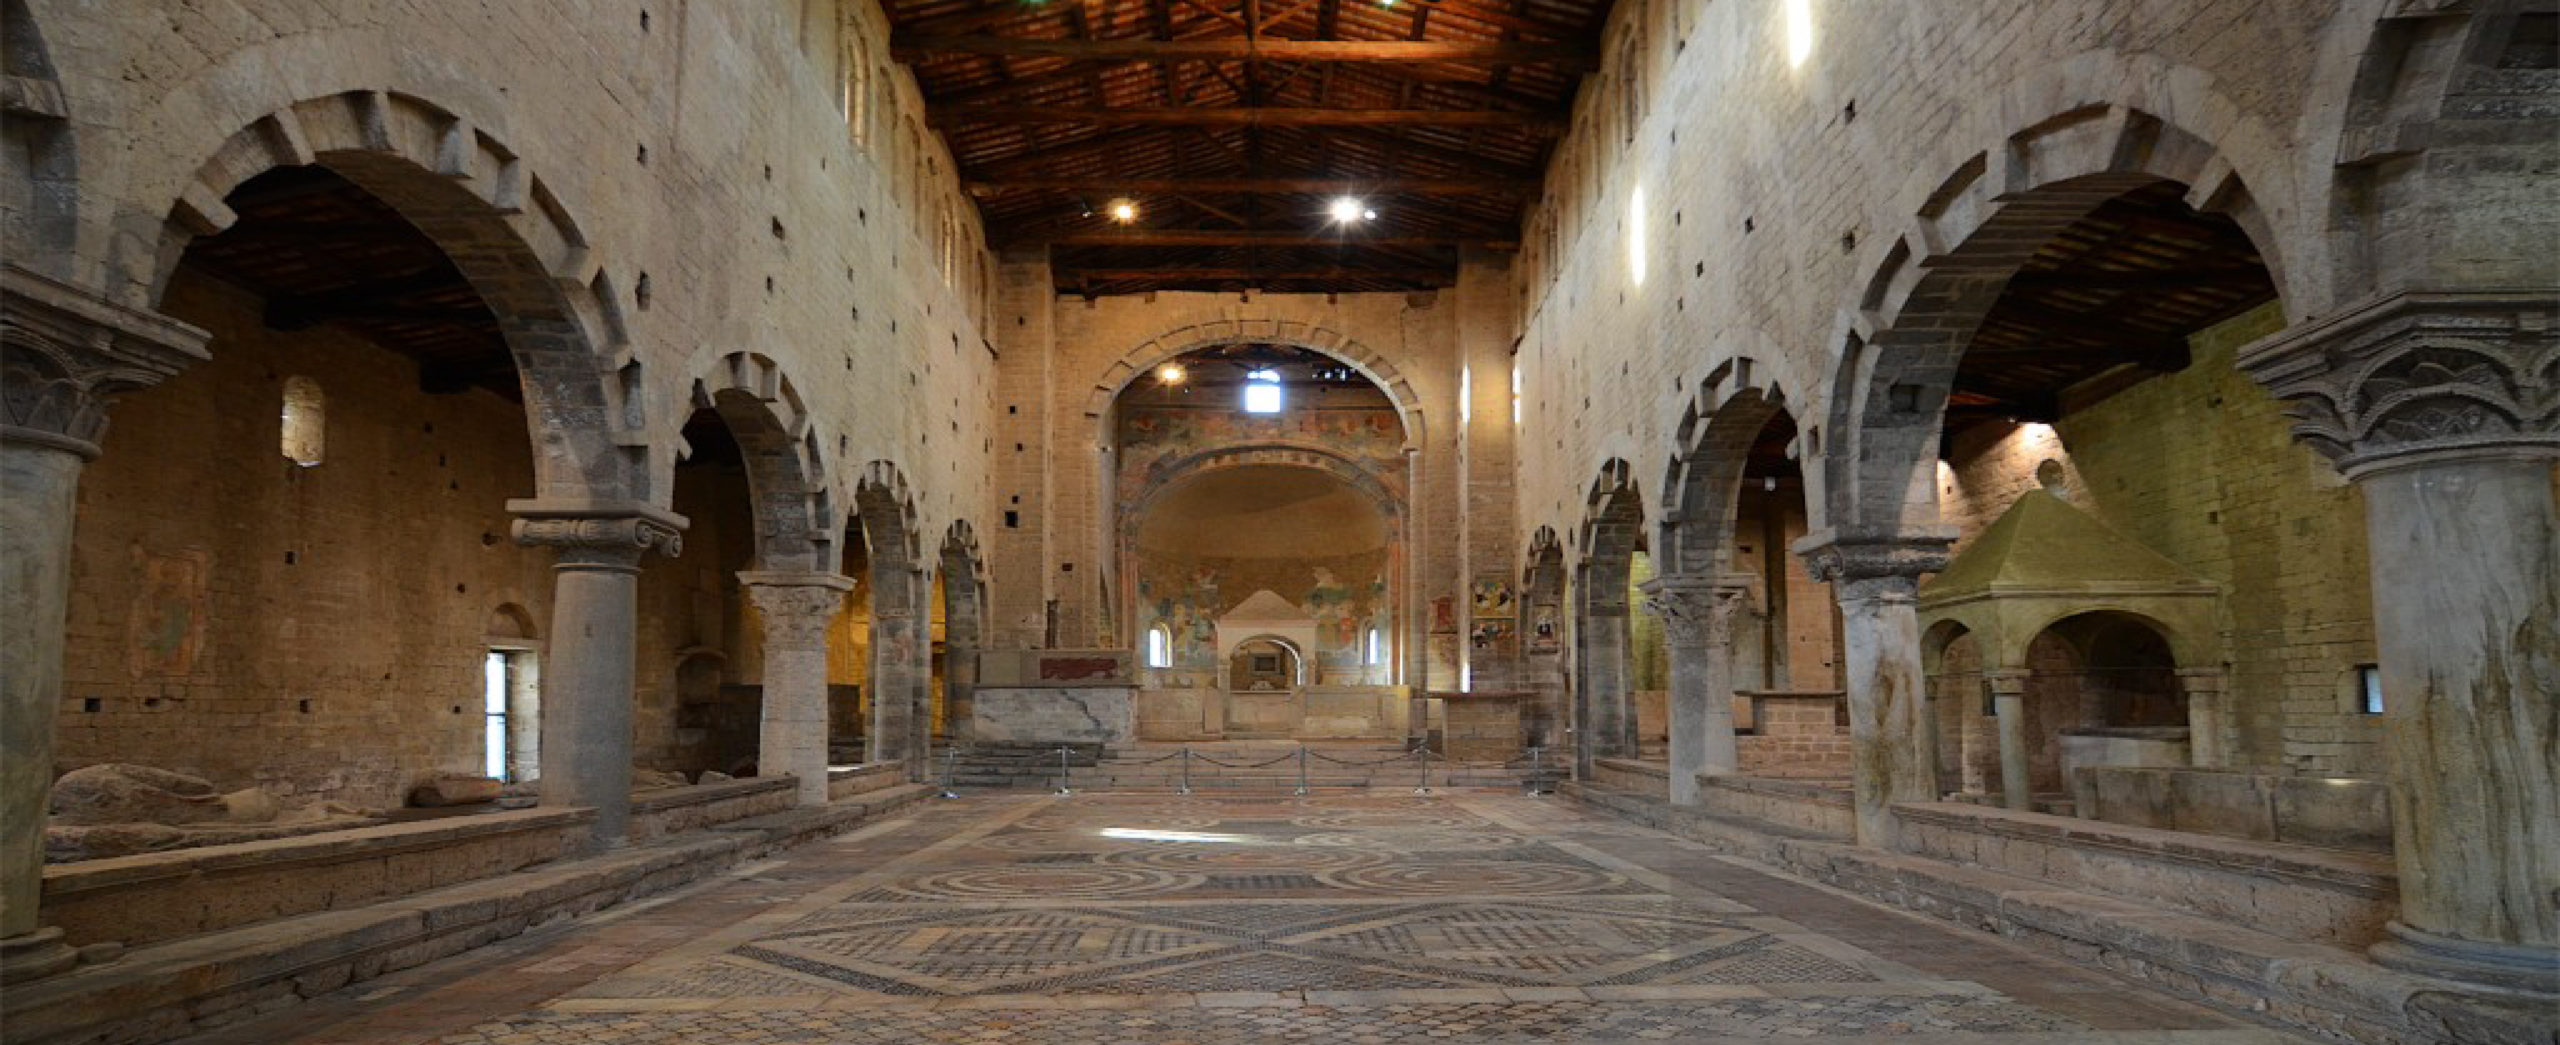 Tuscania - interno della chiesa di San Pietro